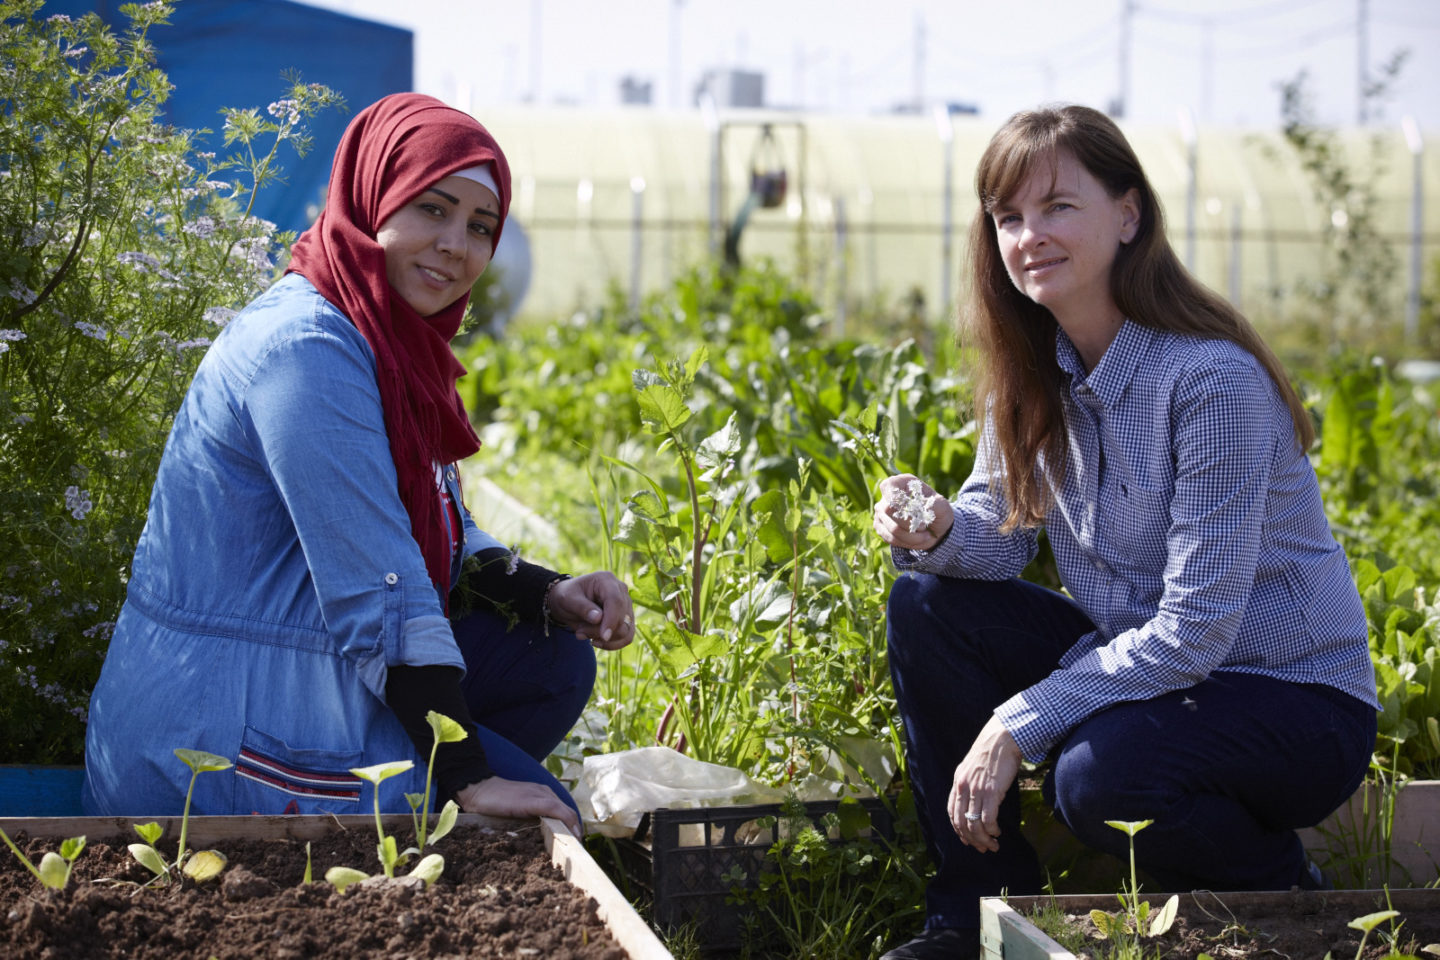 Two women in community garden